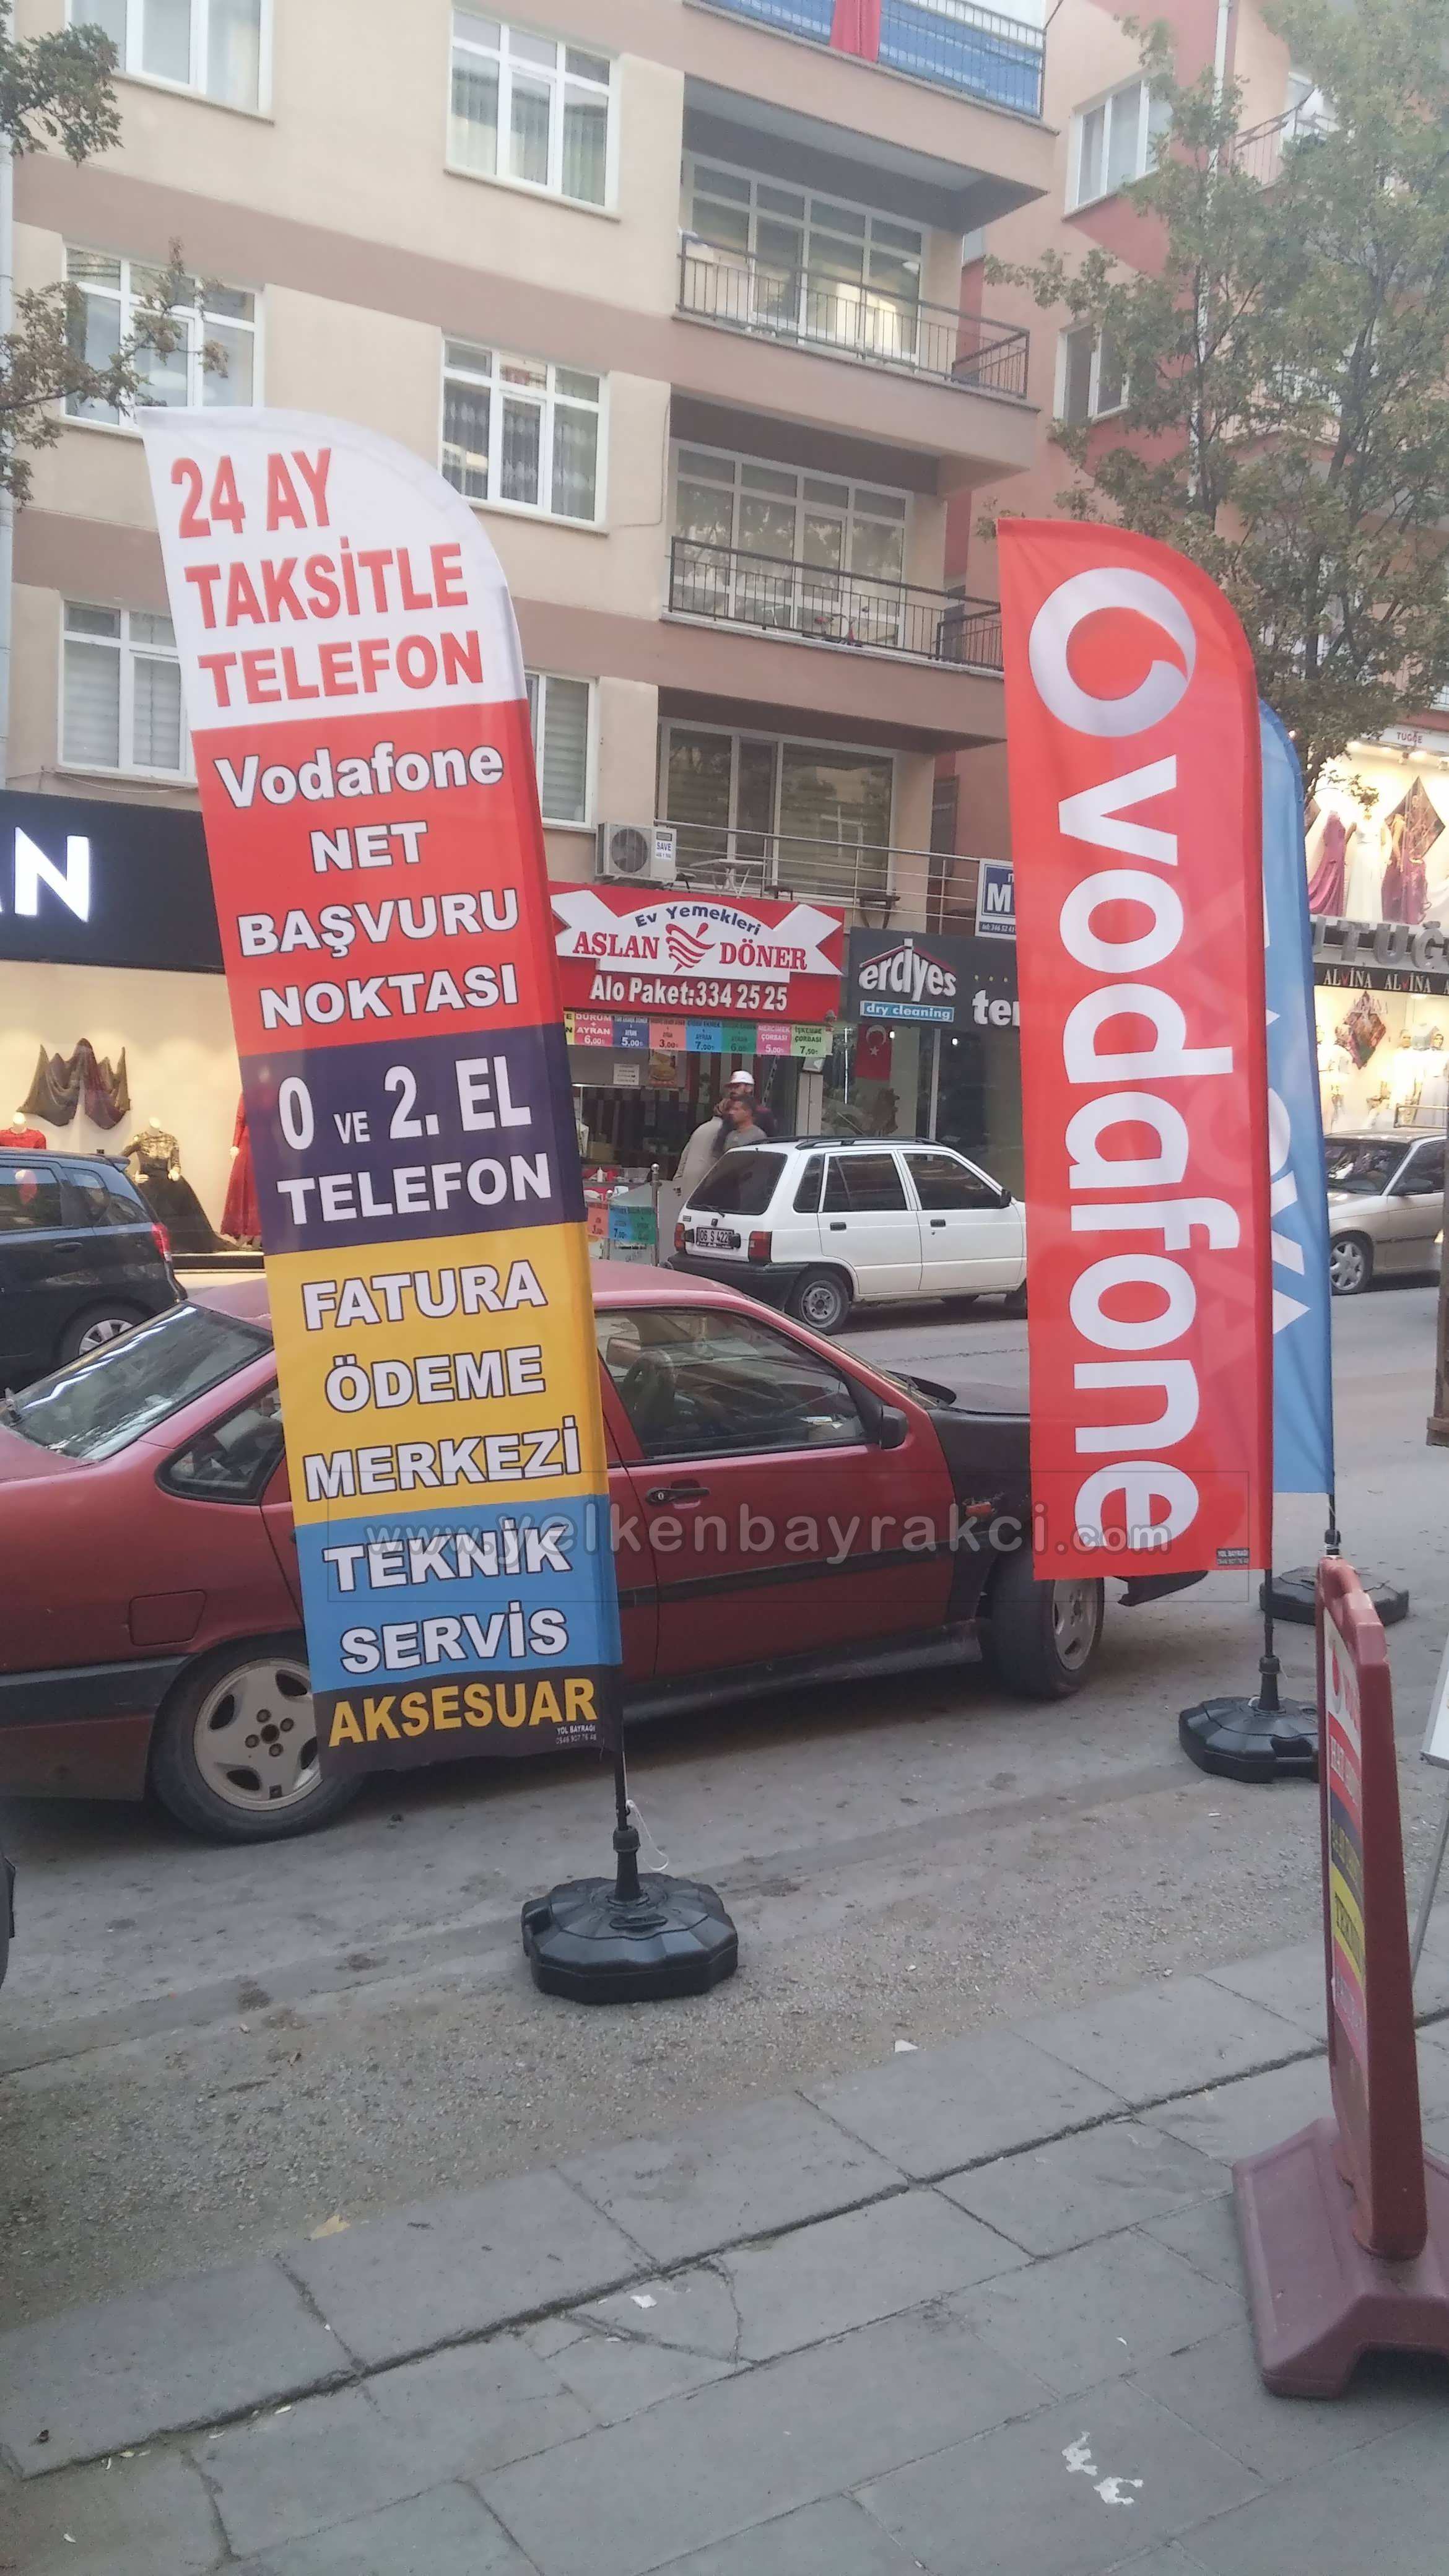 Vodafone Net, Taksitle Telefon